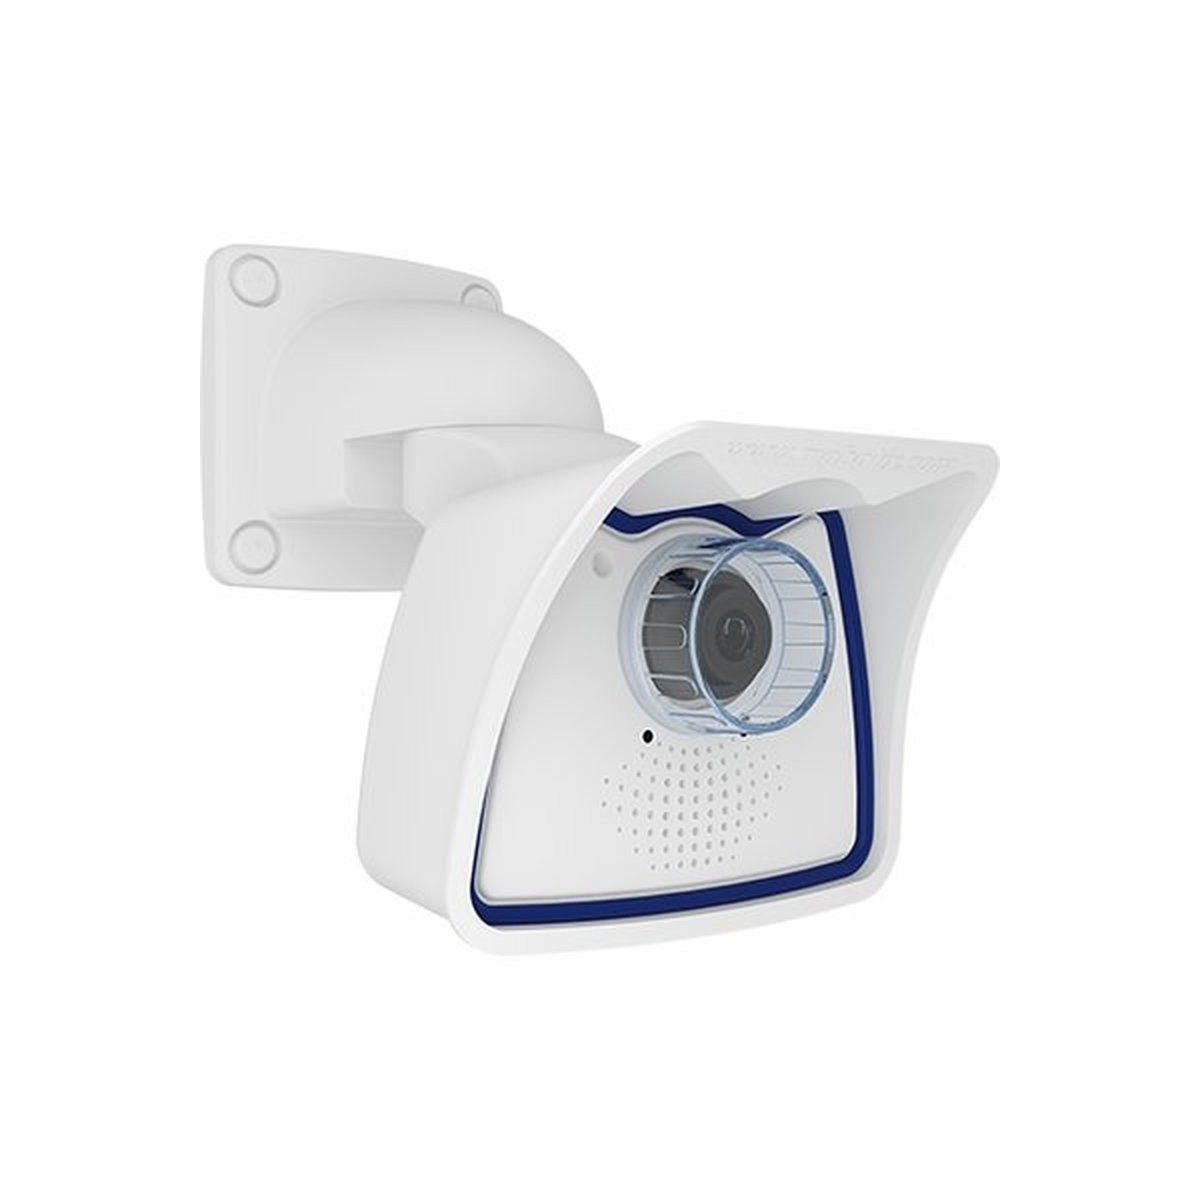 Mobotix Mx-M26B-6D - IP security camera - Indoor & outdoor - Wired - EN55032: 2012; EN55022: 2010; EN55024: 2010; EN50121-4: 201